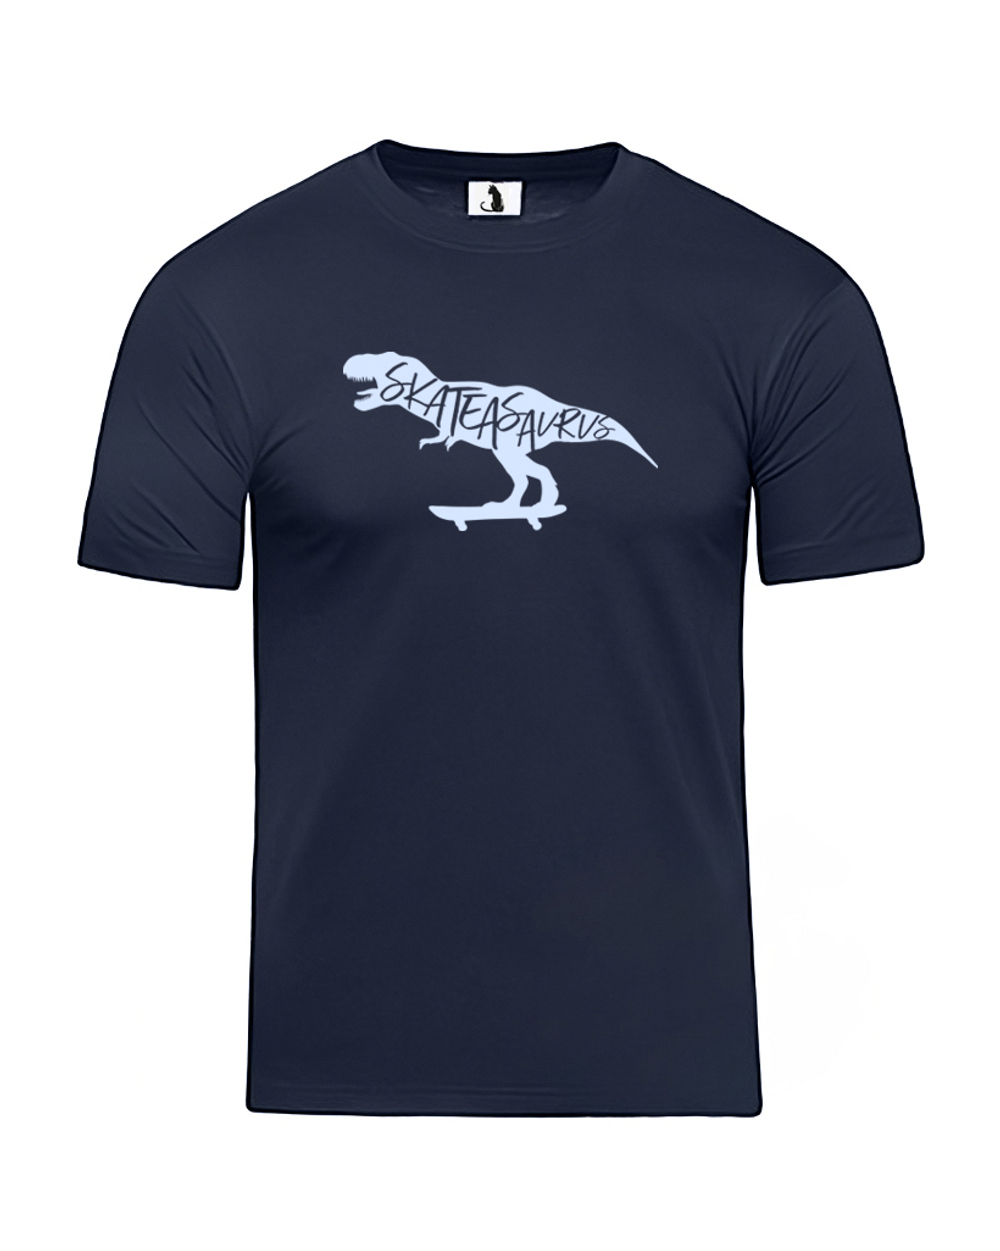 Футболка Skateasaurus unisex темно-синяя с голубым рисунком